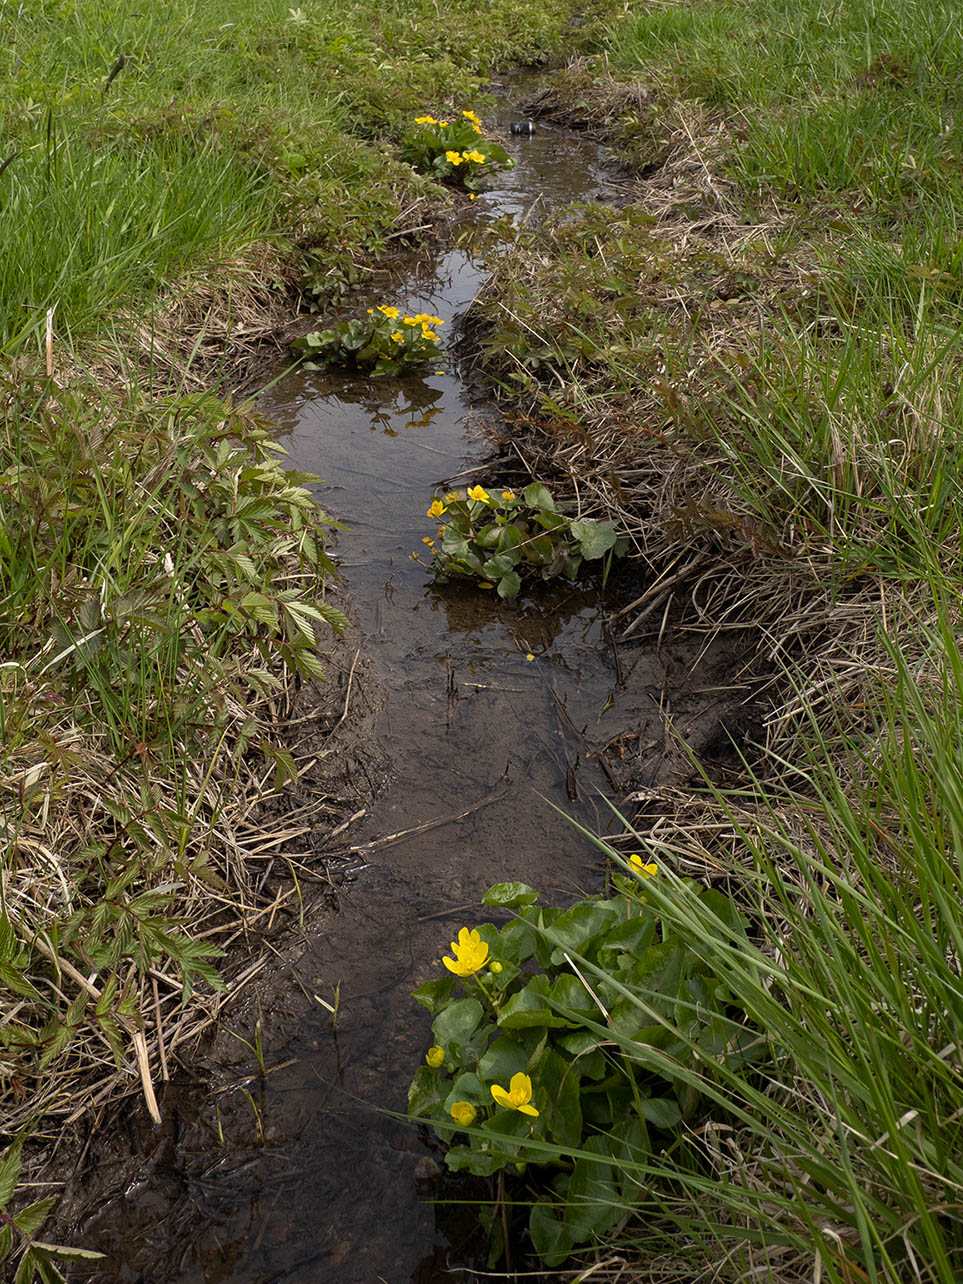 Калужница болотная (Caltha palustris) в природном парке G?rv?lns naturreservat, Стокгольм. Май 2020 года. Автор фото: Сутормина Марина